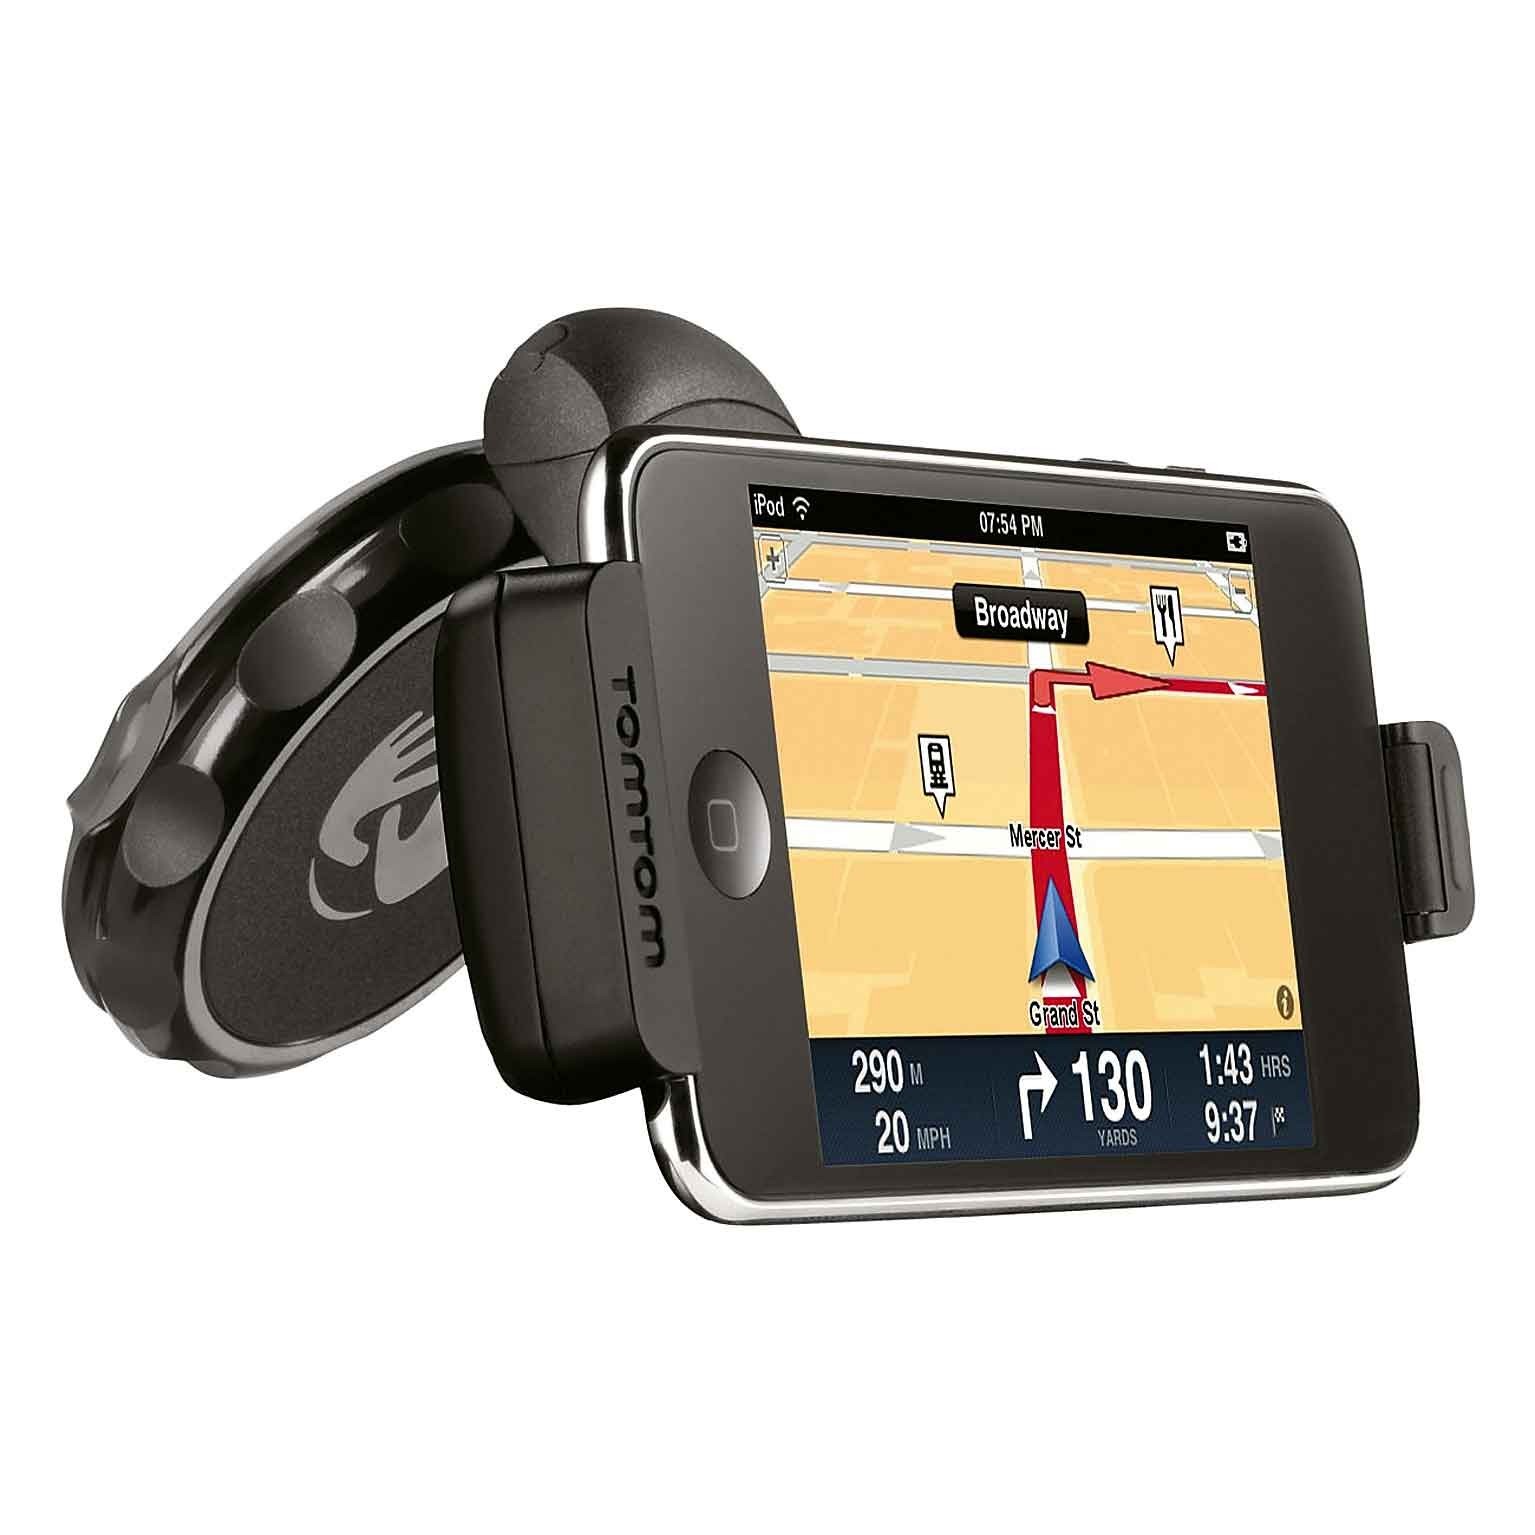 TomTom Car Kit til iPod Touch m/ Indbygget GPS Modtager - Sort